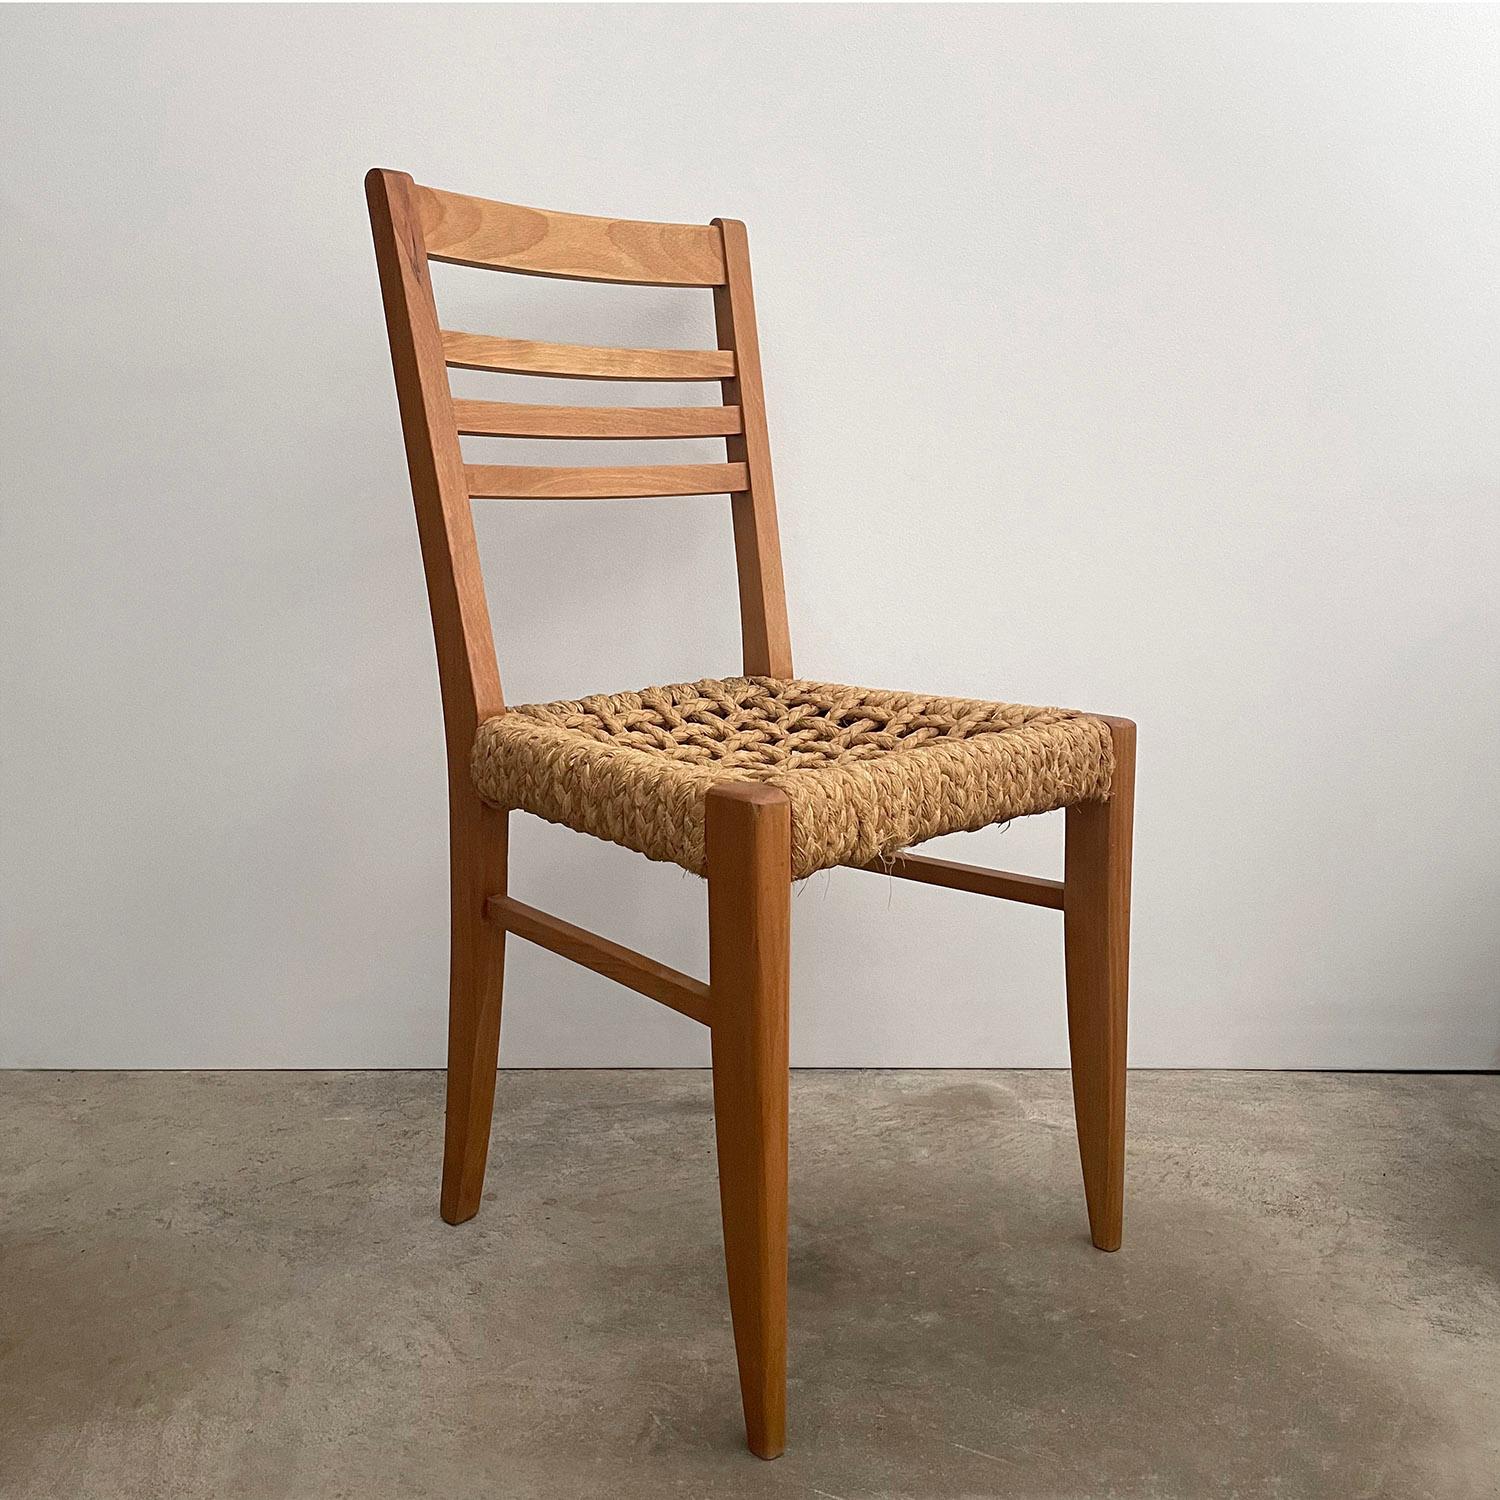 Audoux-Minet Beistellstuhl aus französischer Eiche und Seilen
Entworfen von Adrien Audoux & Frida Minet
Frankreich, ca. 1950er Jahre
Dieser hübsche Beistellstuhl verleiht jedem Raum eine wunderbare Textur und eine reiche Geschichte 
Massivholzrahmen